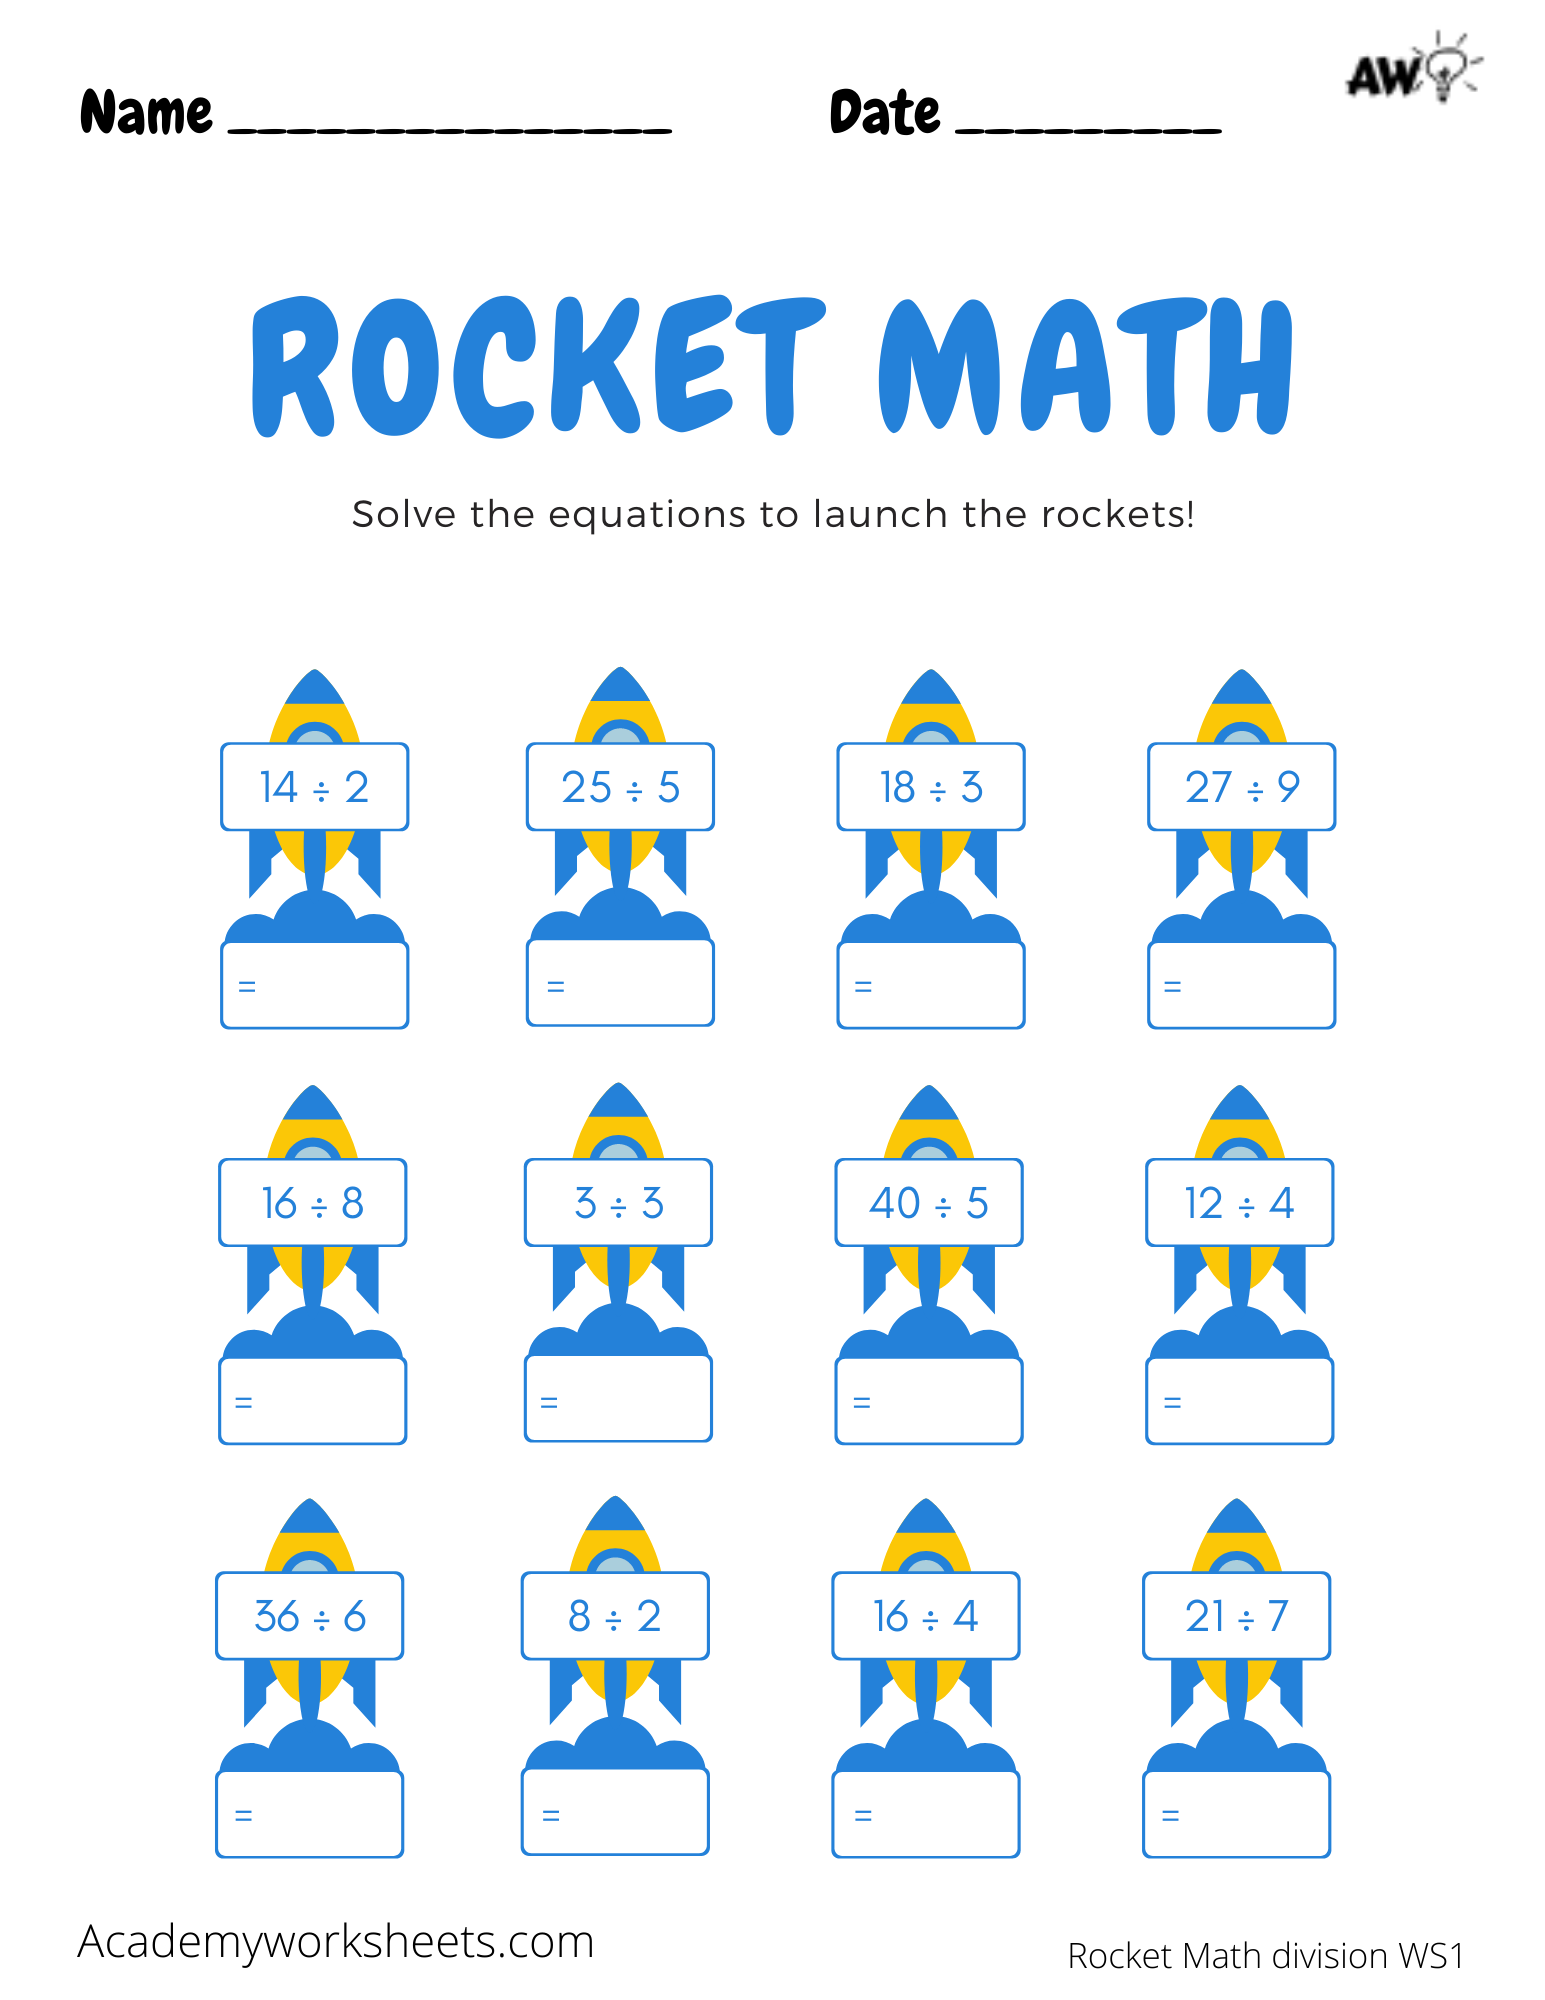 rocket-math-ms-lins-first-grade-class-free-rocket-math-worksheets-2nd